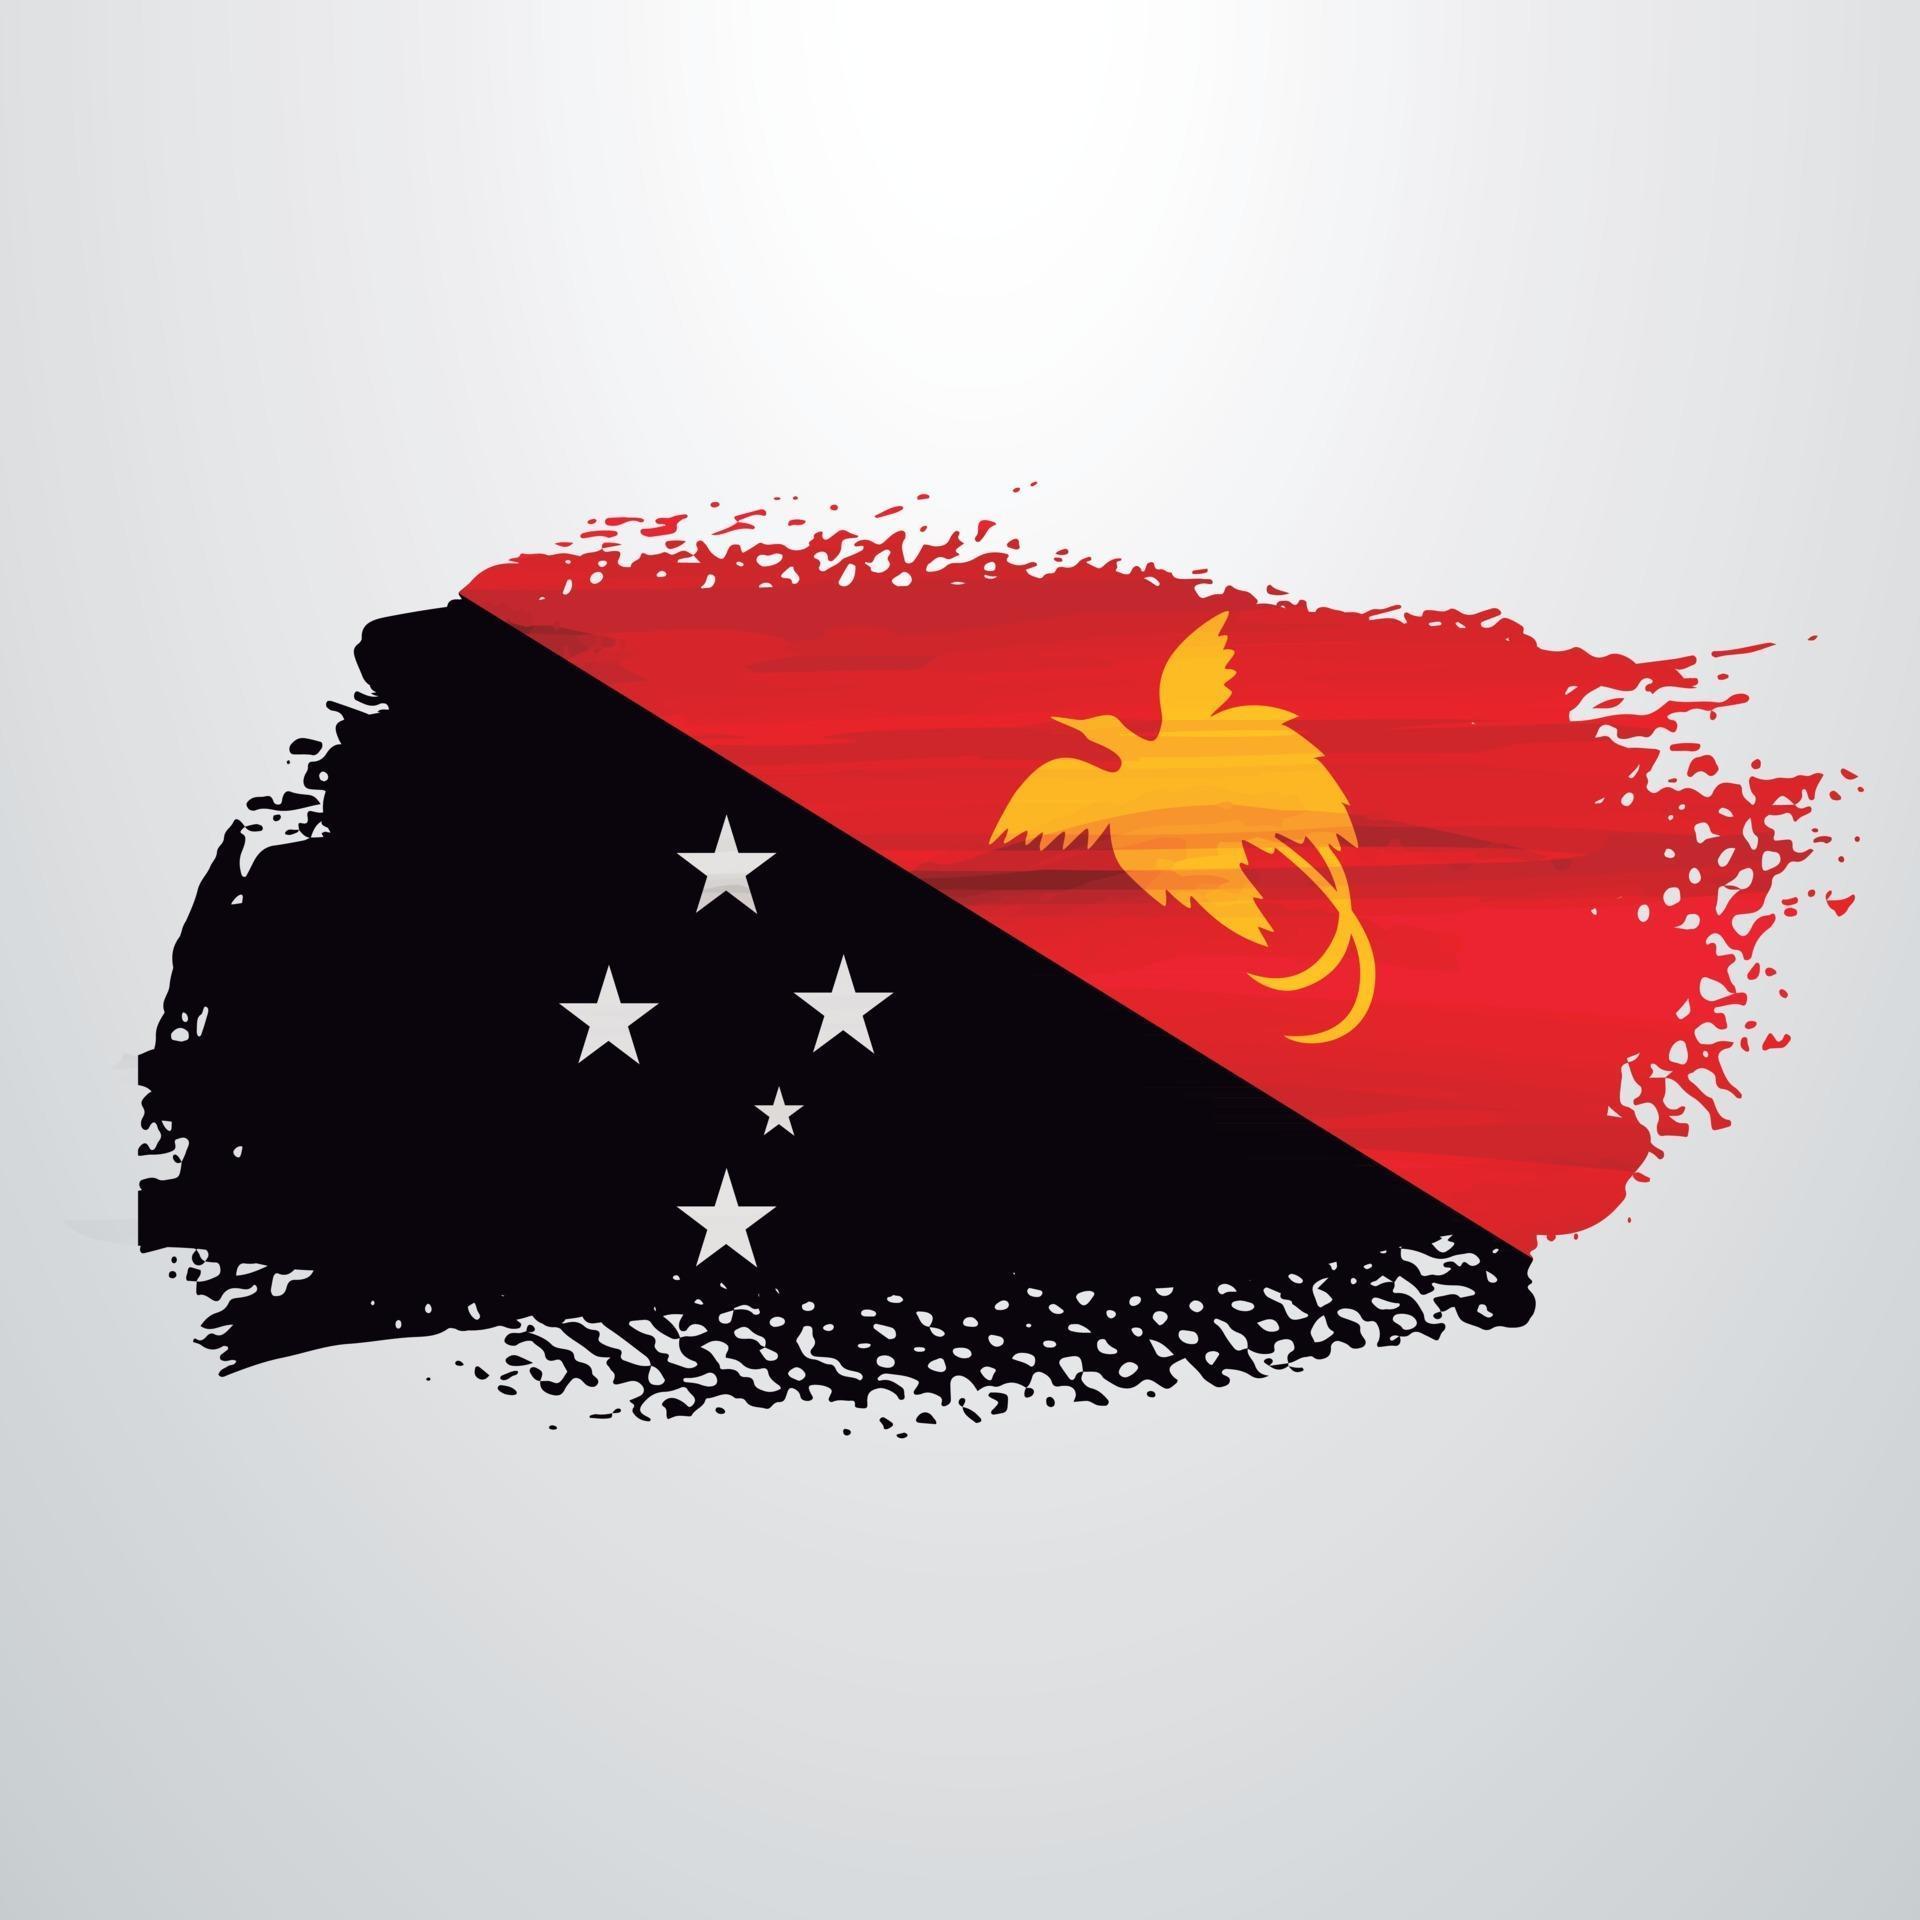 Papua New Guinea flag brush 2632051 Vector Art at Vecteezy